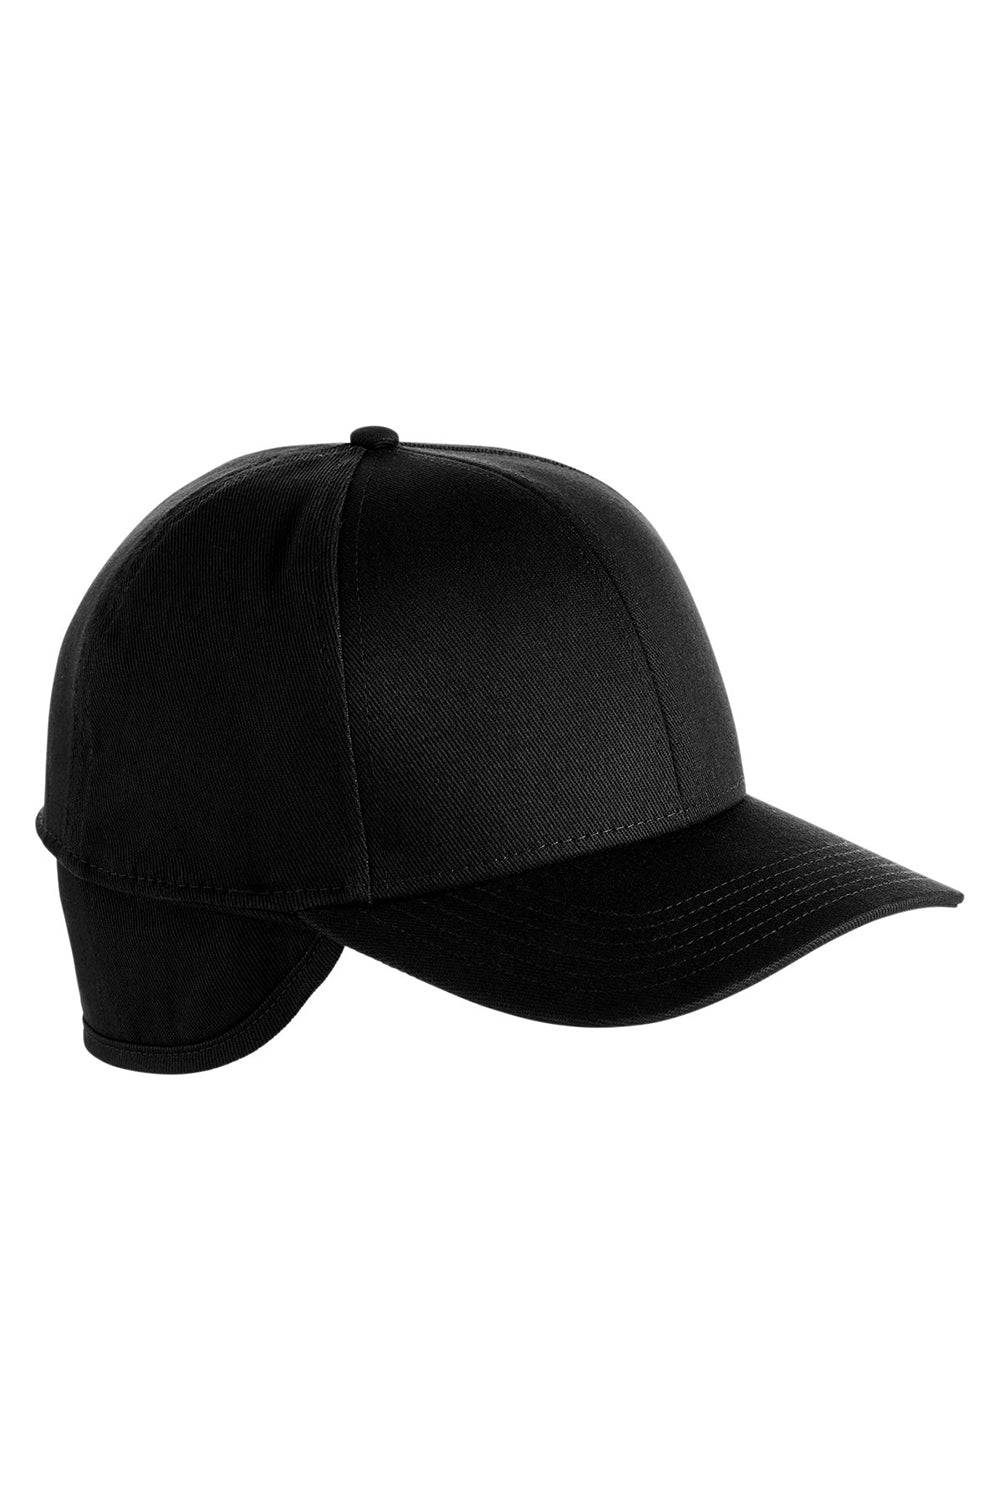 Harriton M802 Mens Climabloc Ear Flap Hat Black Front